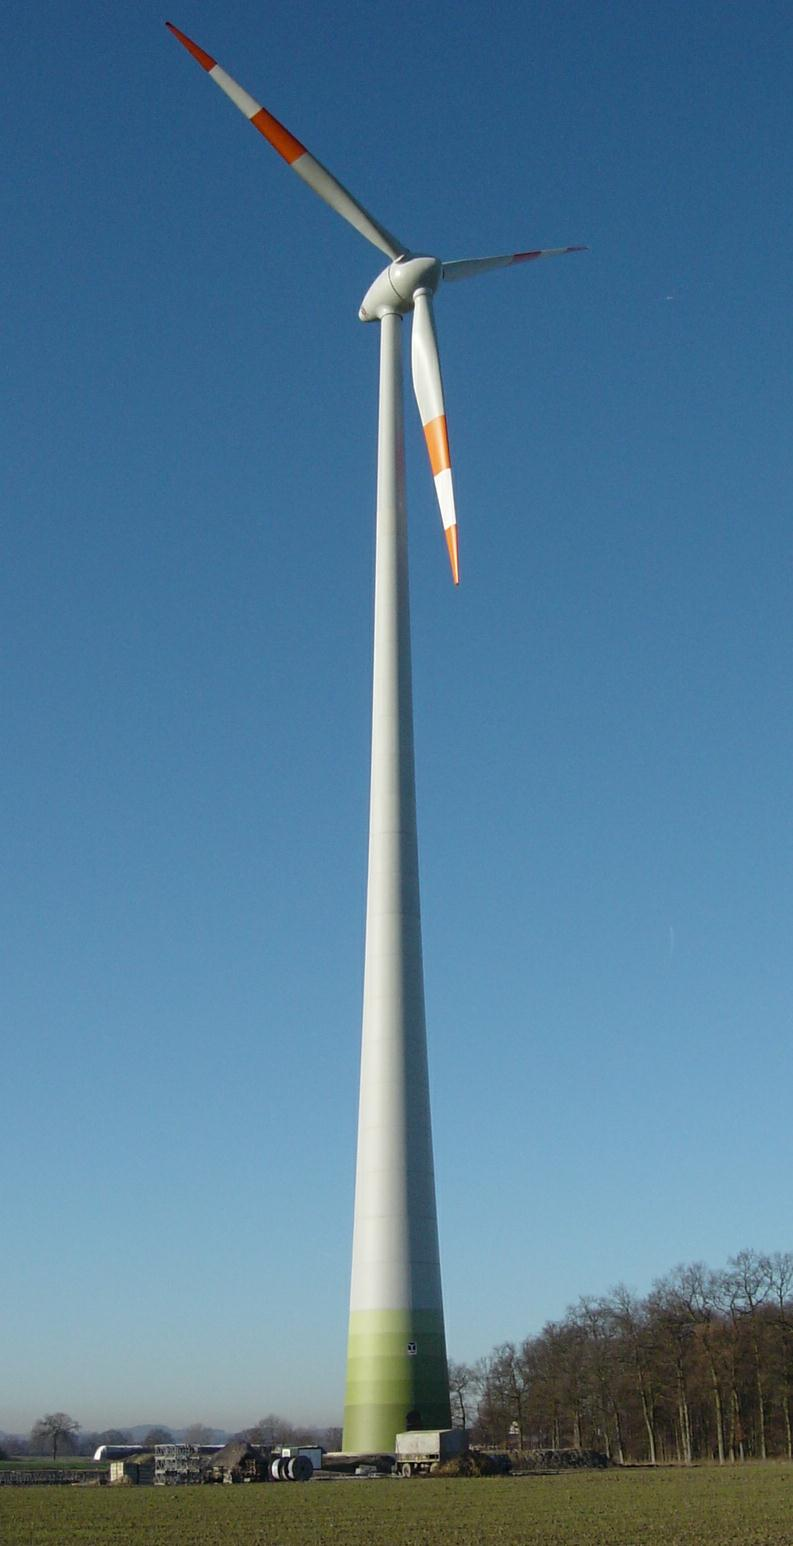 Energieertrag einer E-82 Bespiel für eine ENERCON E-82 Nennleistung: 2.000 kw Nabenhöhe: 138 m Ø Jahresenergieertrag ca. 5.500.000 kwh spart folgende Schadstoffe ein*: 4.